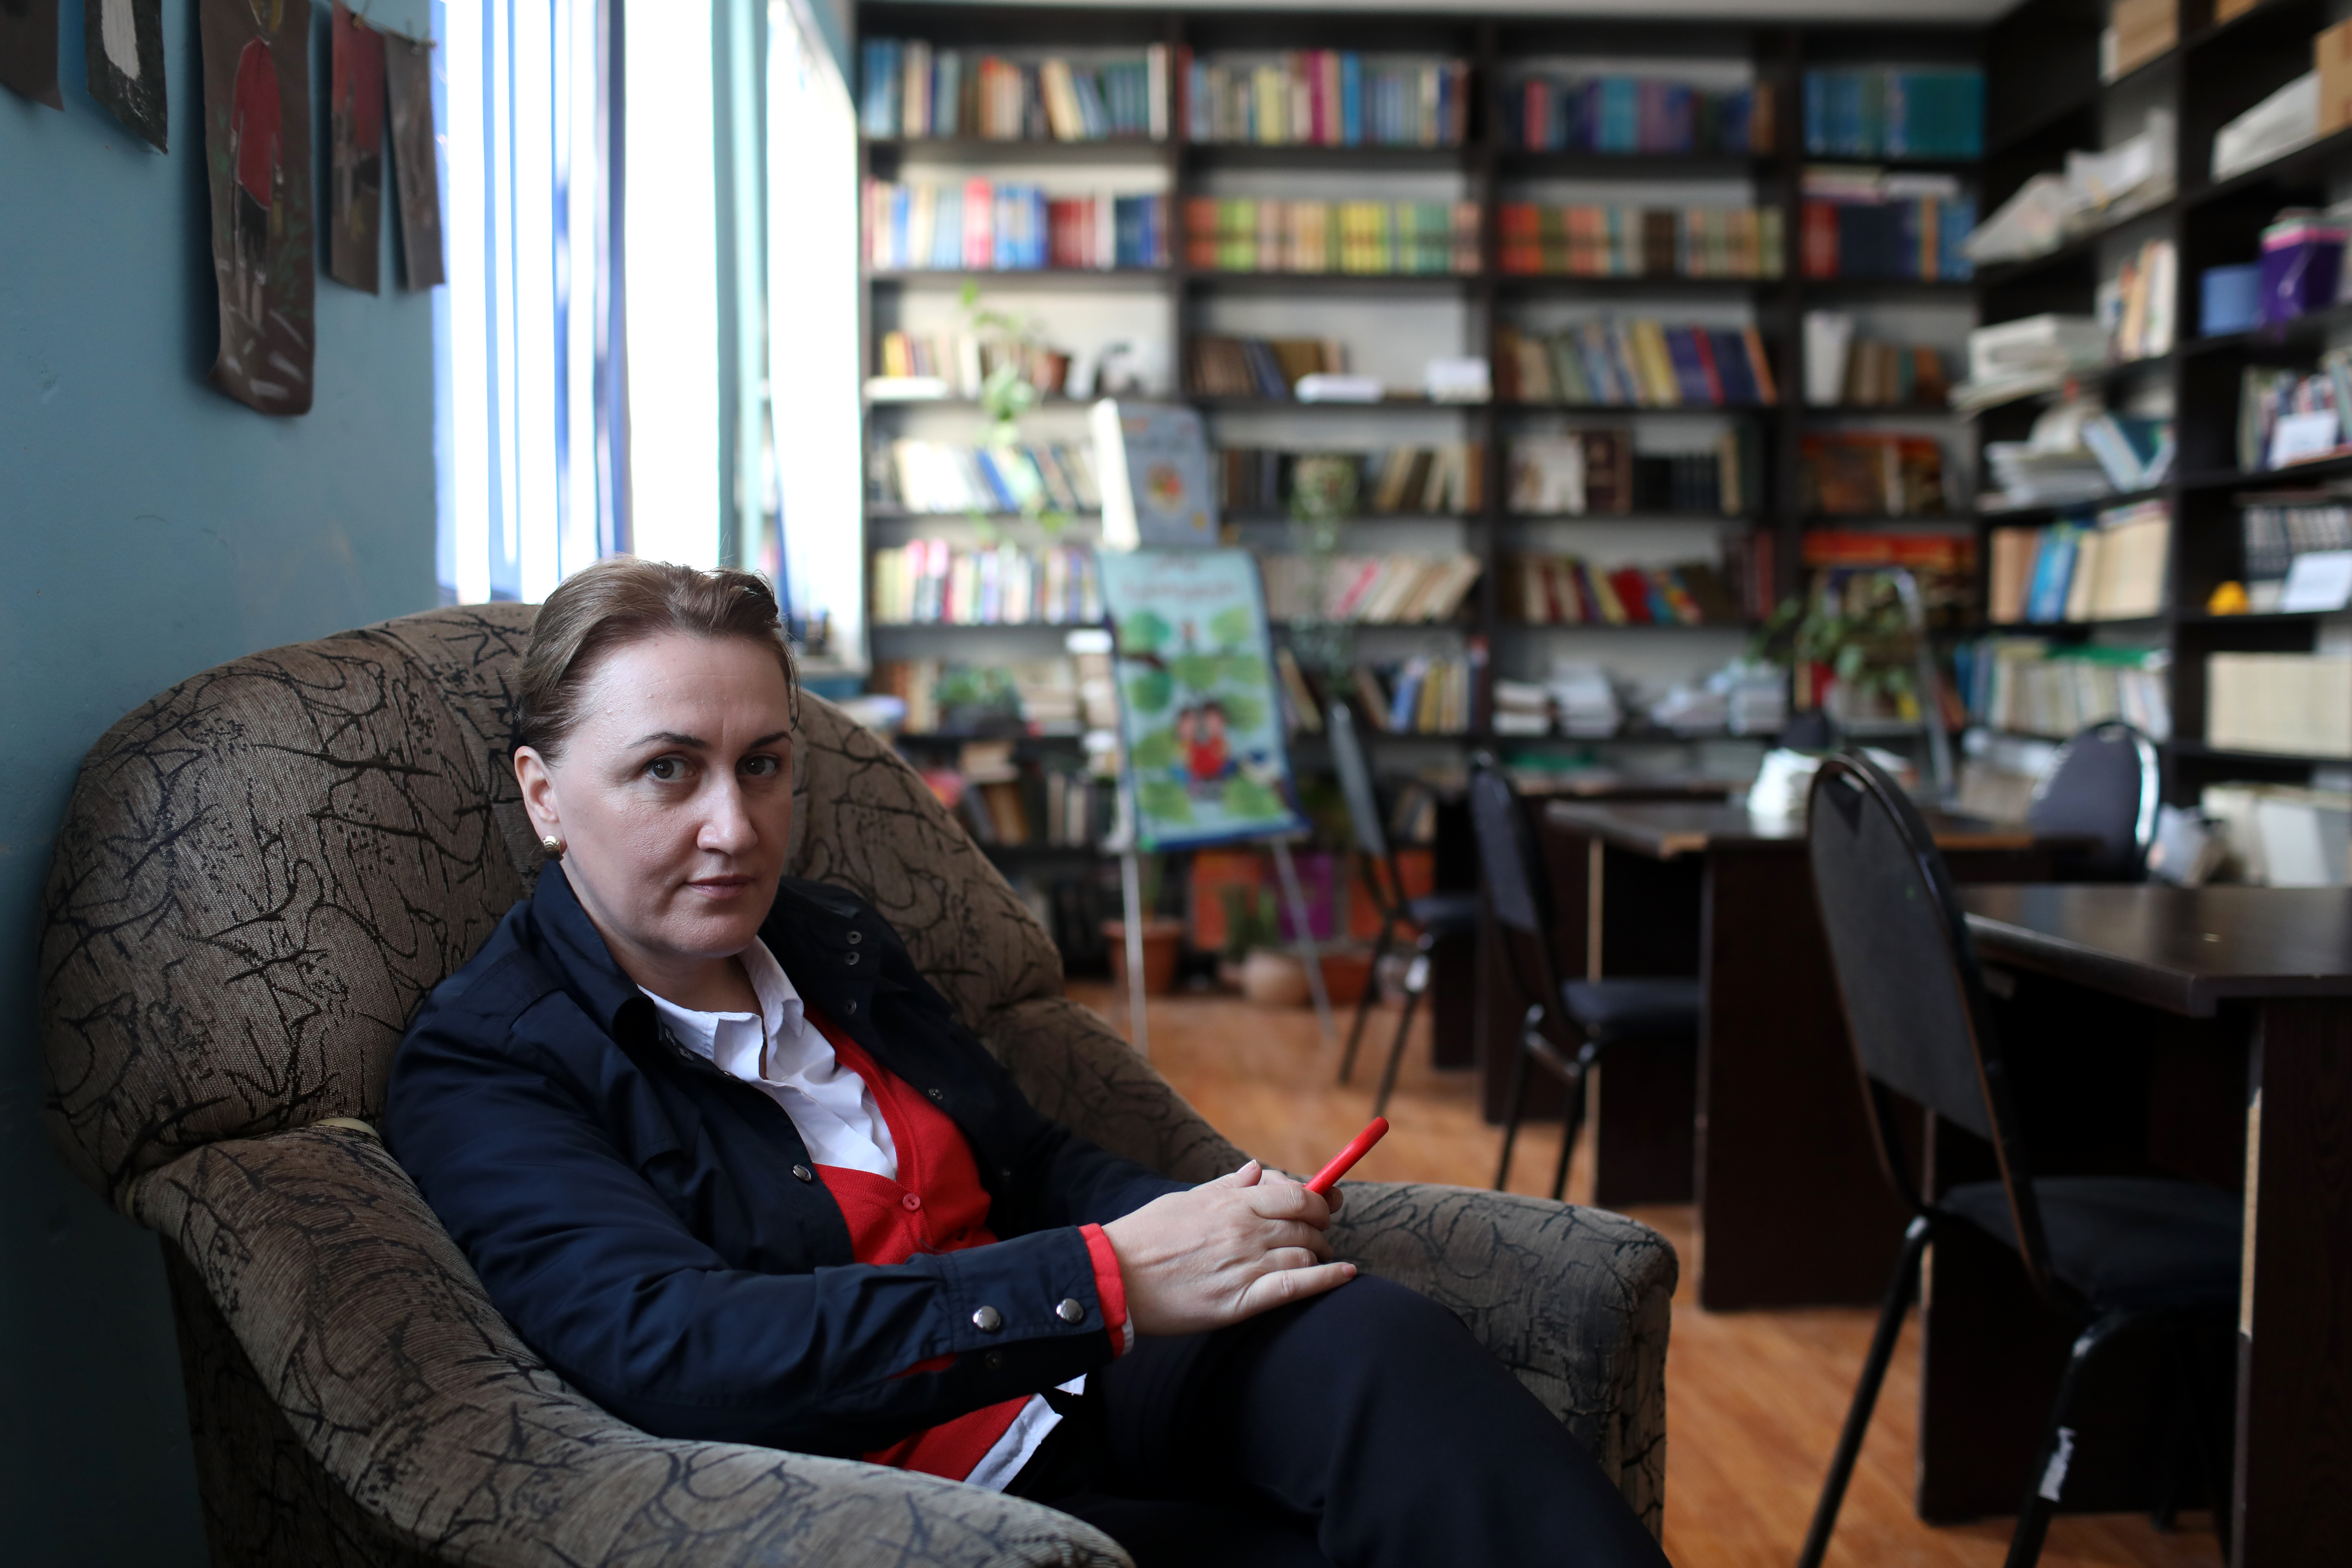 Eka Tabuashvili, Principal of Tbilisi Public school No. #182 is sitting in a school library